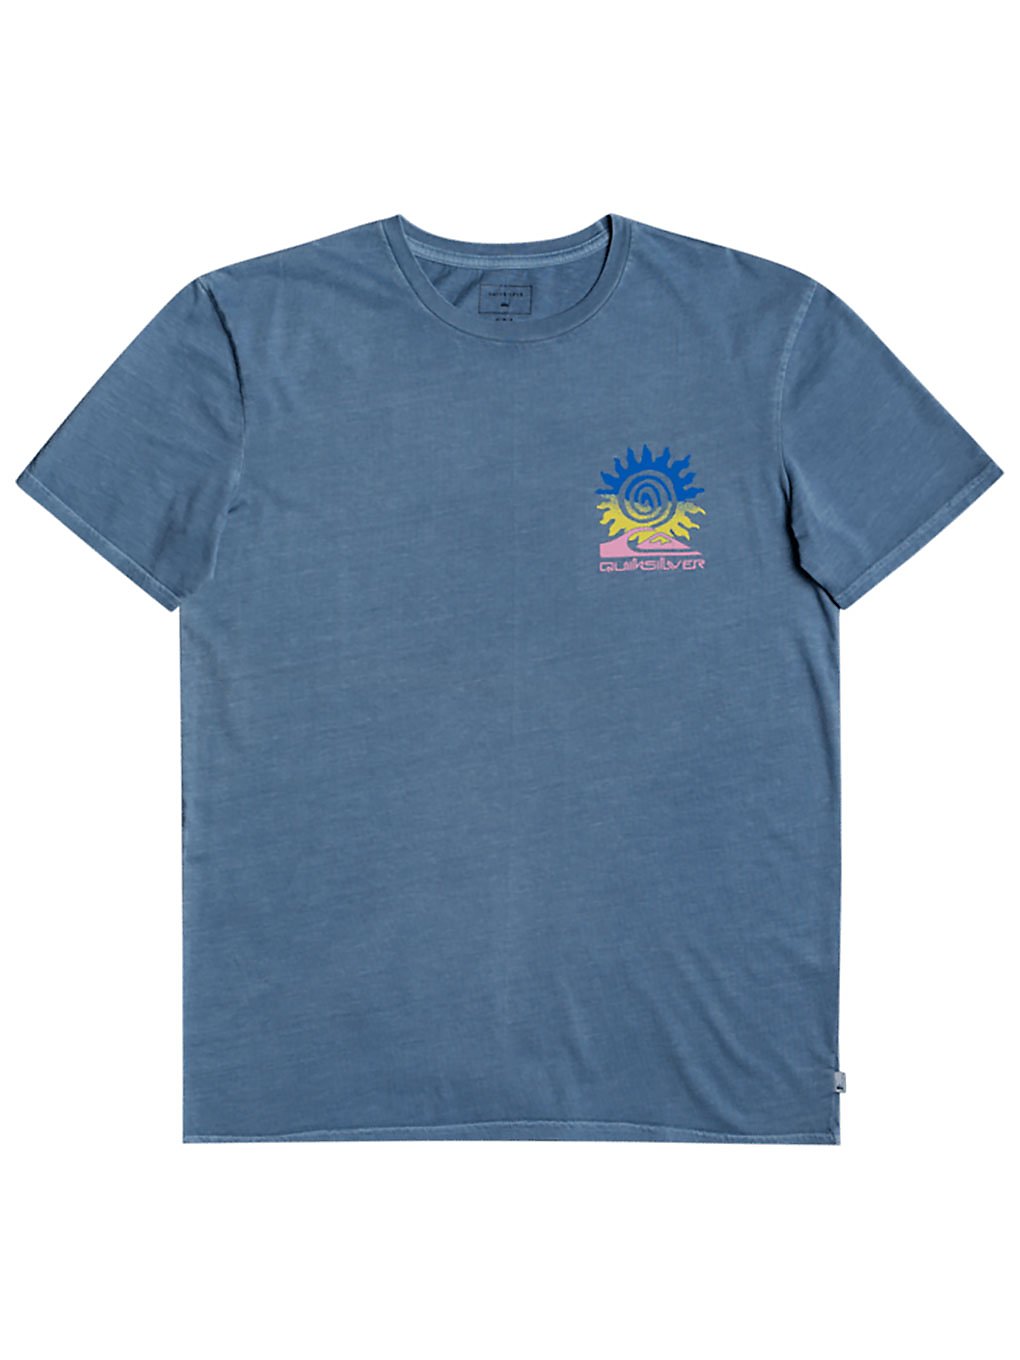 Quiksilver Island Pulse T-Shirt captains blue